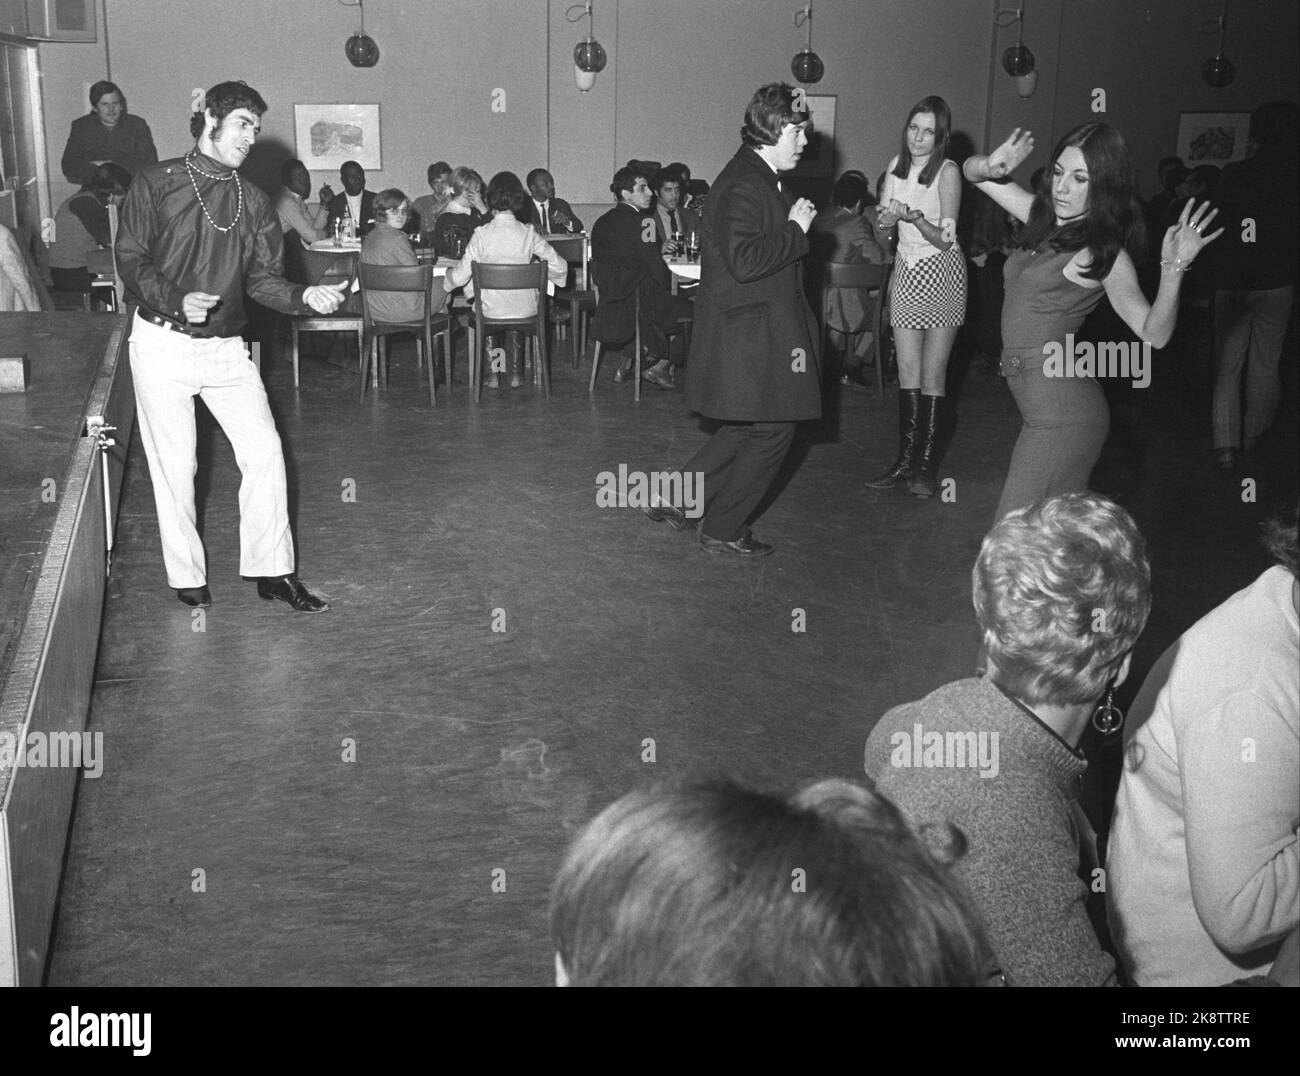 26 avril d'Oslo. La discothèque 'Colony Club', la première en Norvège, attire à la fois des célébrités et d'autres. Voici quelques lions de danse sur la piste de danse. Photo: Aage Storløkken / actuel / NTB Banque D'Images